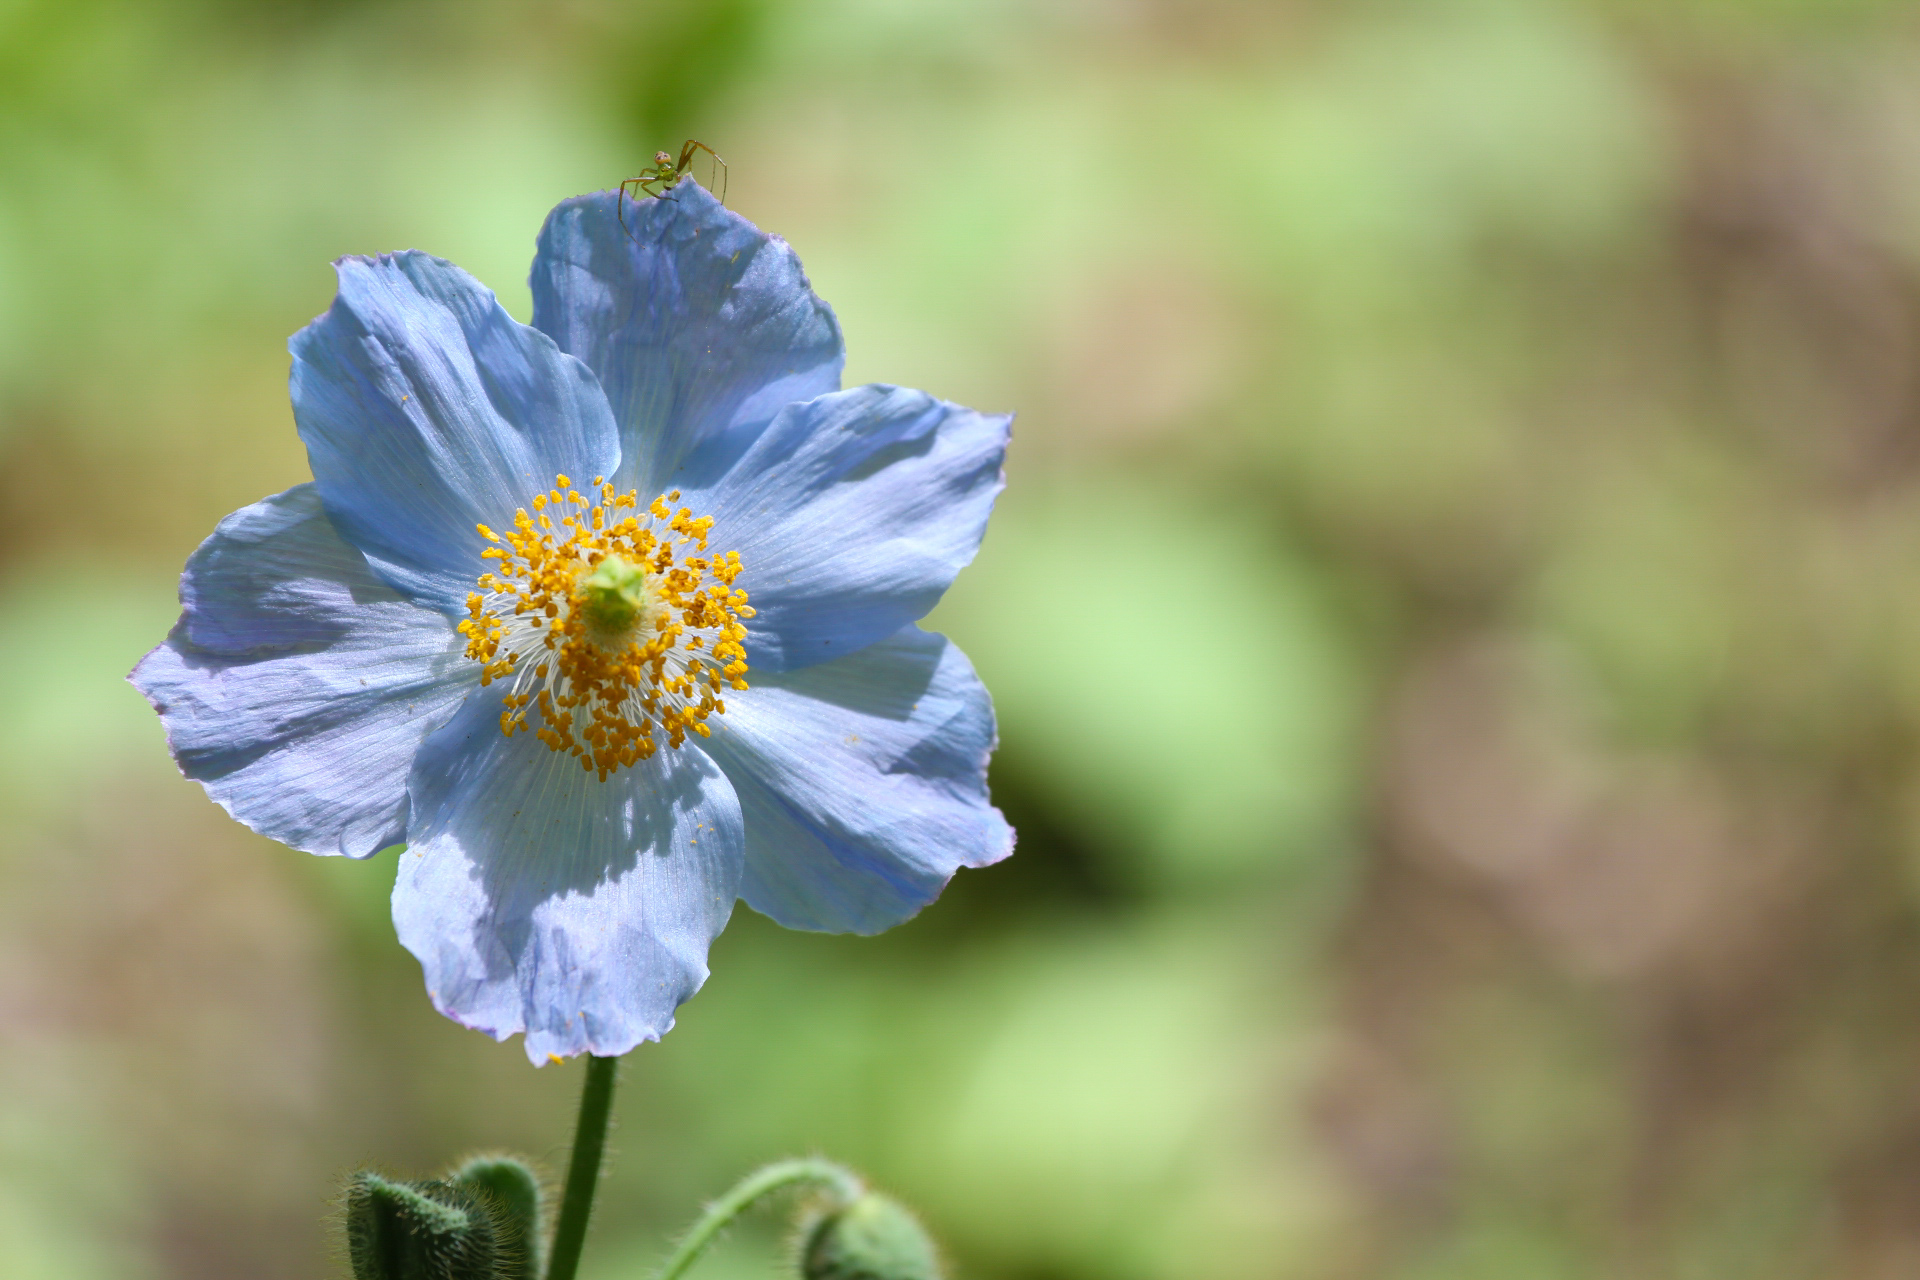 上三依水生植物園 ヒマラヤの青いケシ や クリンソウ など約300種の草花たち 6月5日更新 栃木県日光市三依地区観光サイト ひぃふぅみより